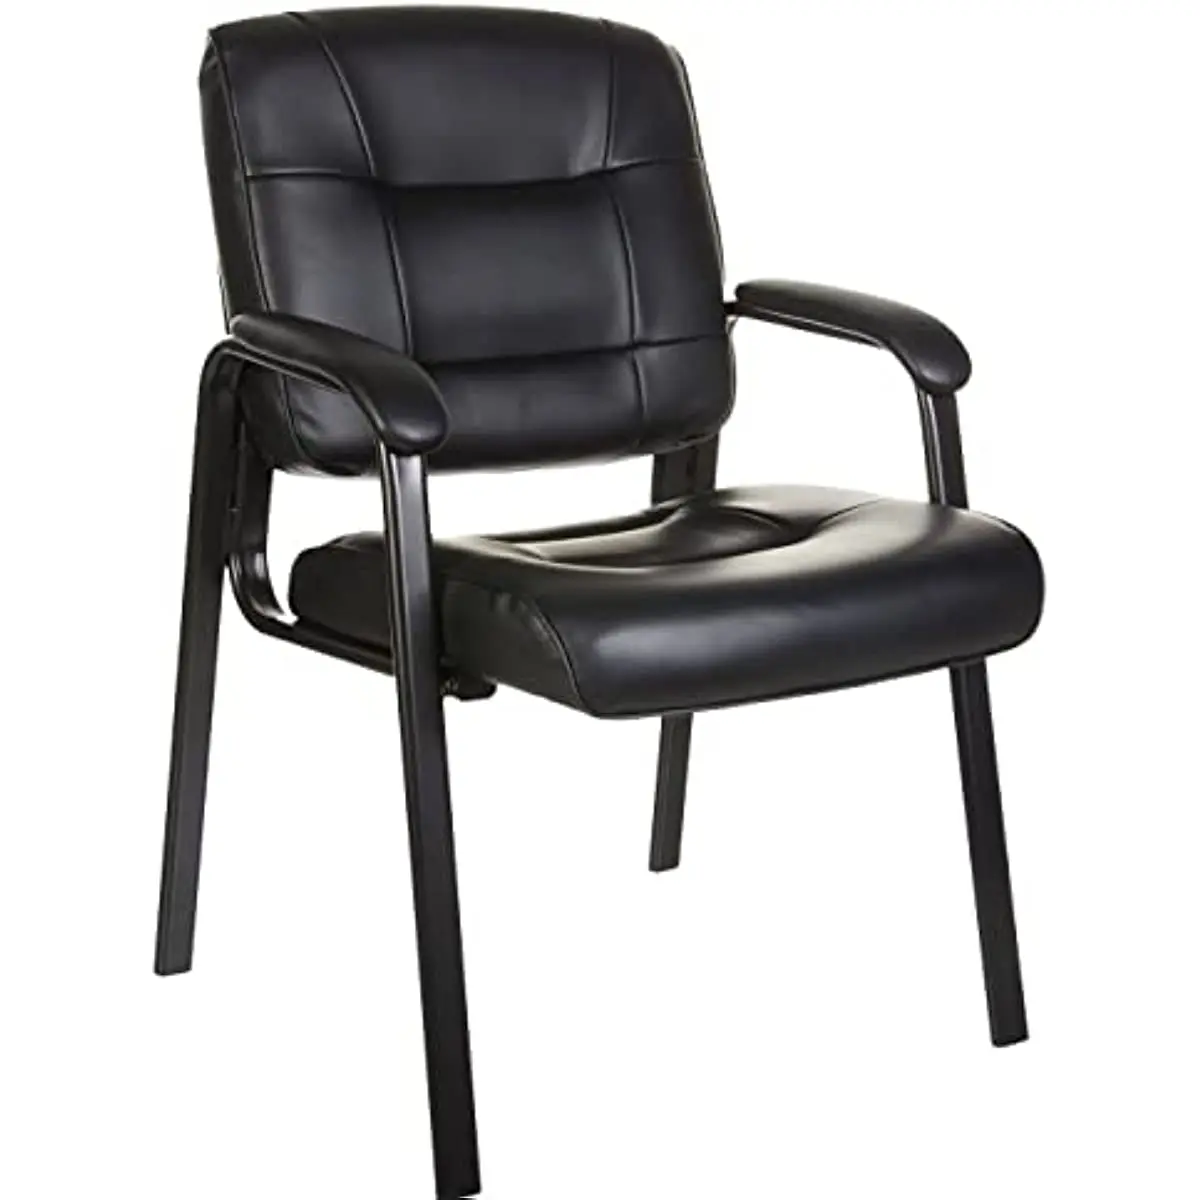 

Классическое офисное гостевое кресло из искусственной кожи с металлической рамкой, в наличии в США, черного цвета